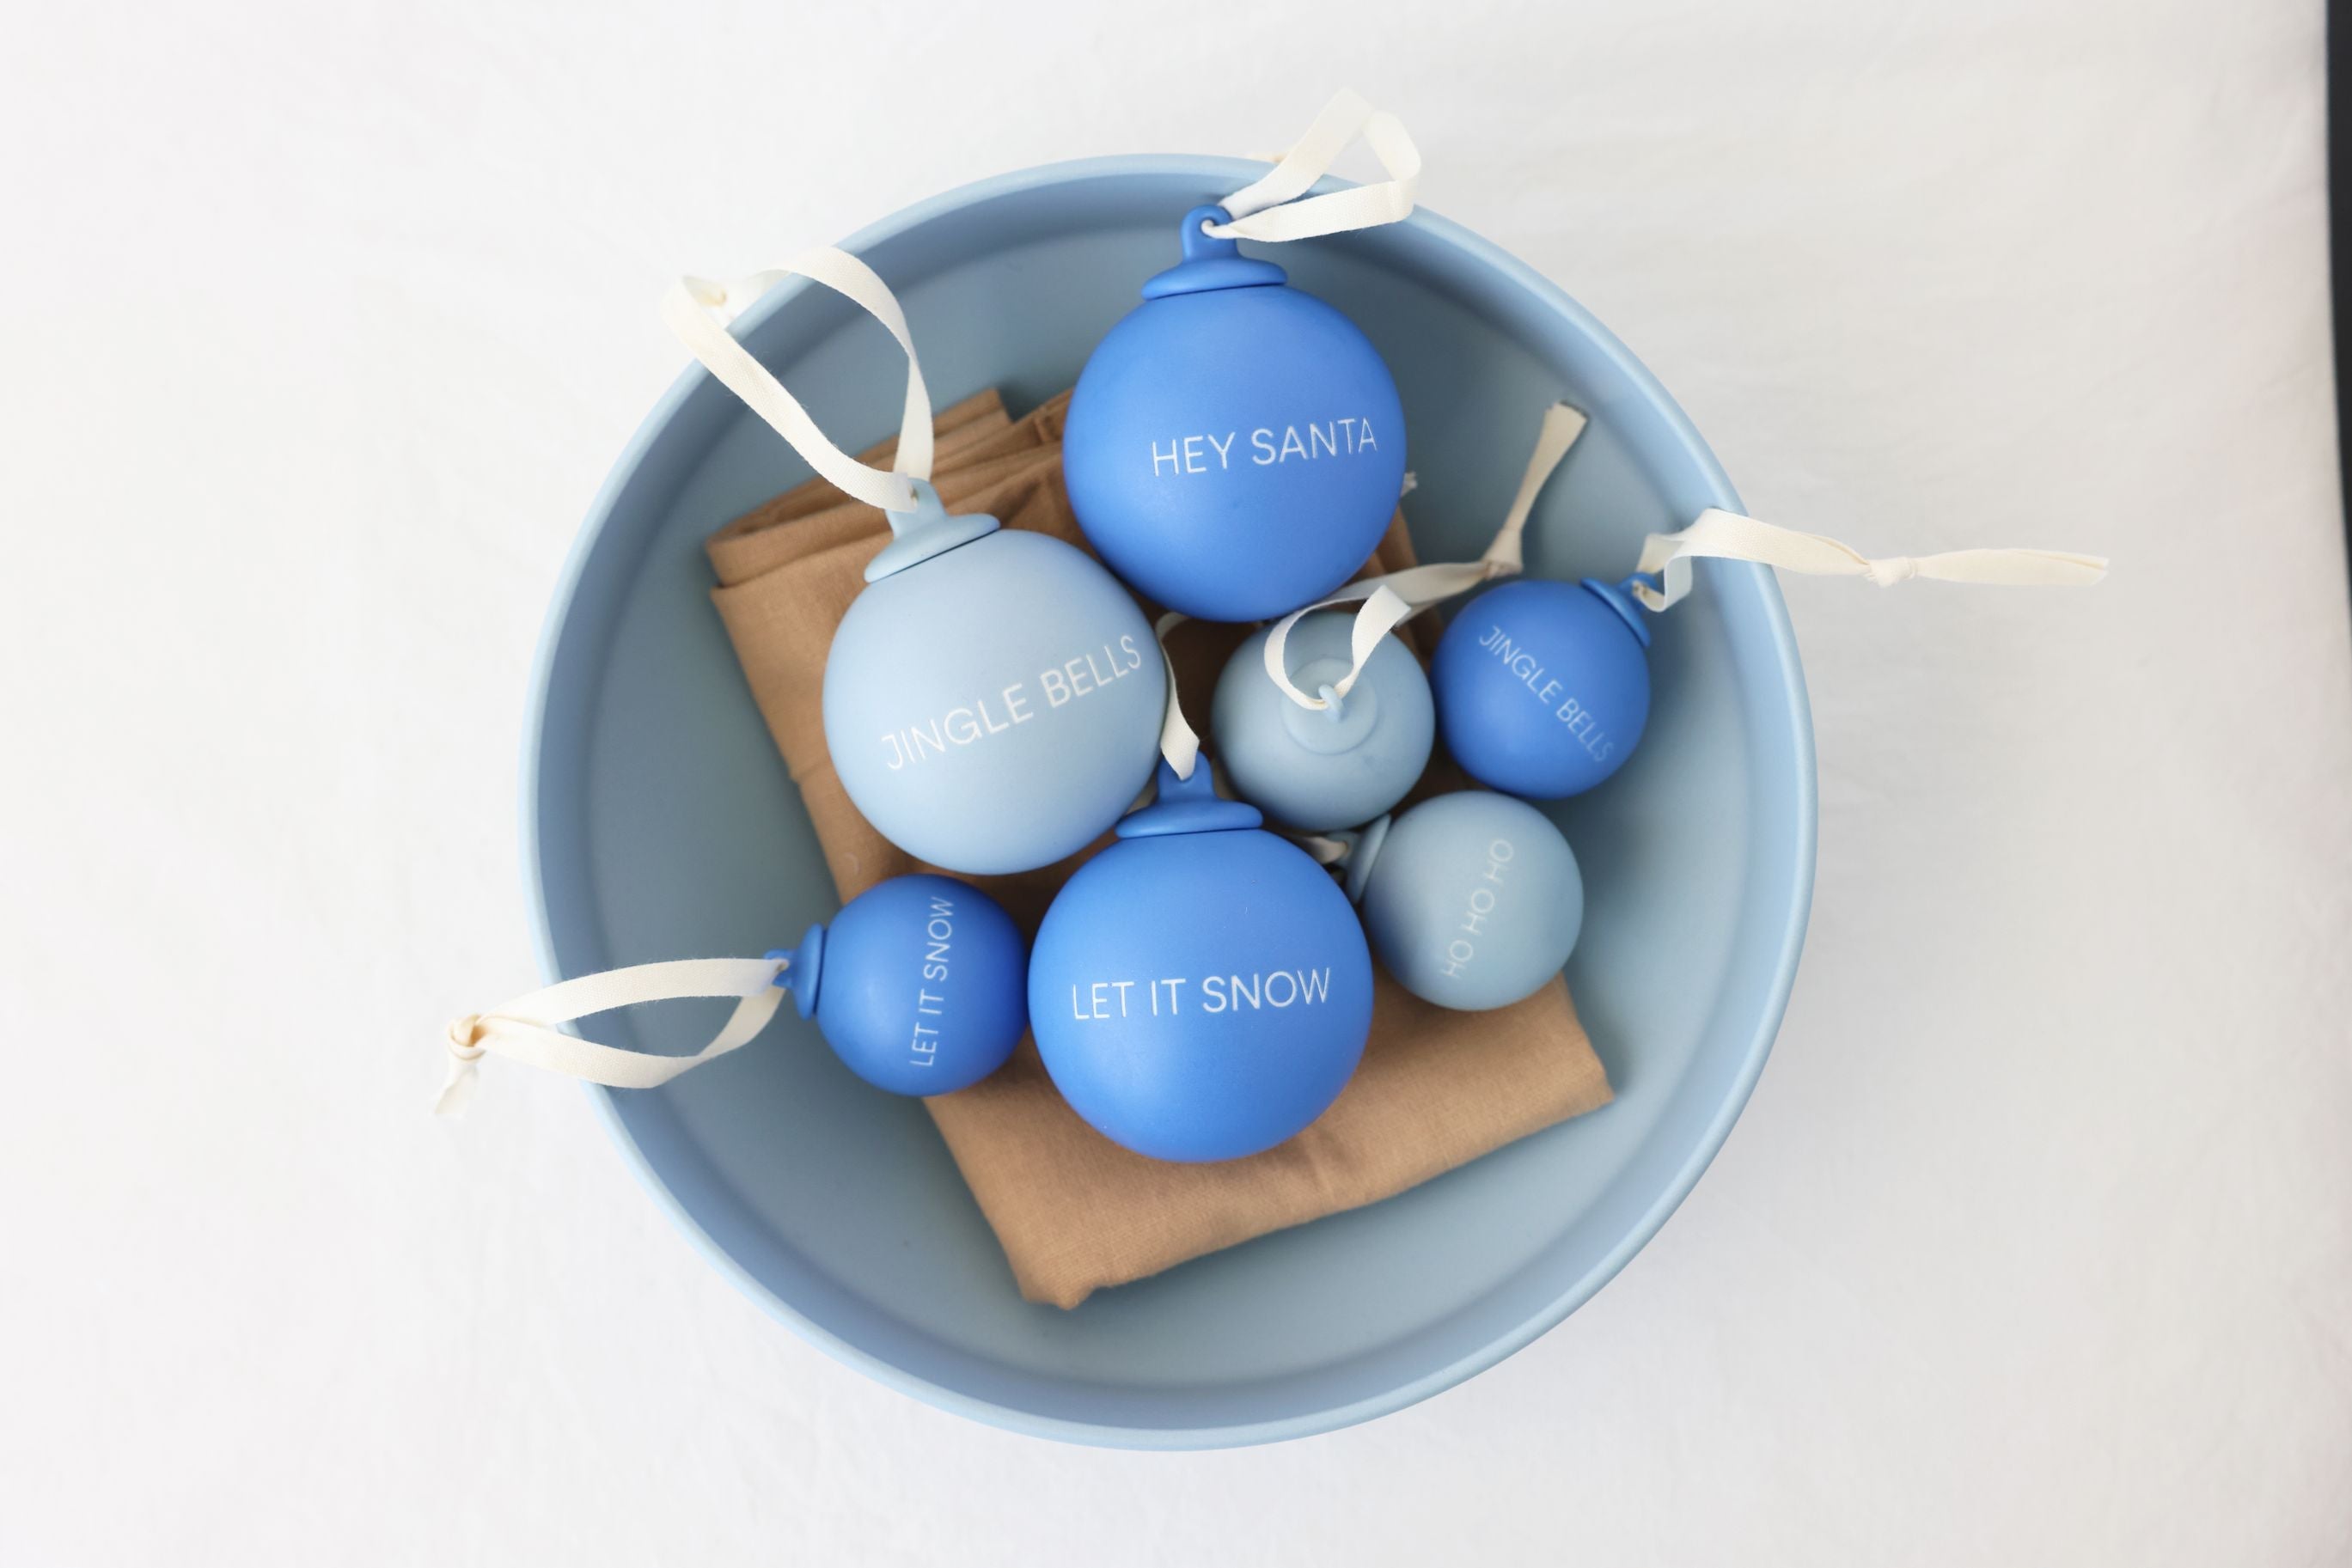 Lettres de conception histoires de Noël pendentifs balles 60 mm (ensemble de 4 pcs), bleu cobalt / bleu clair